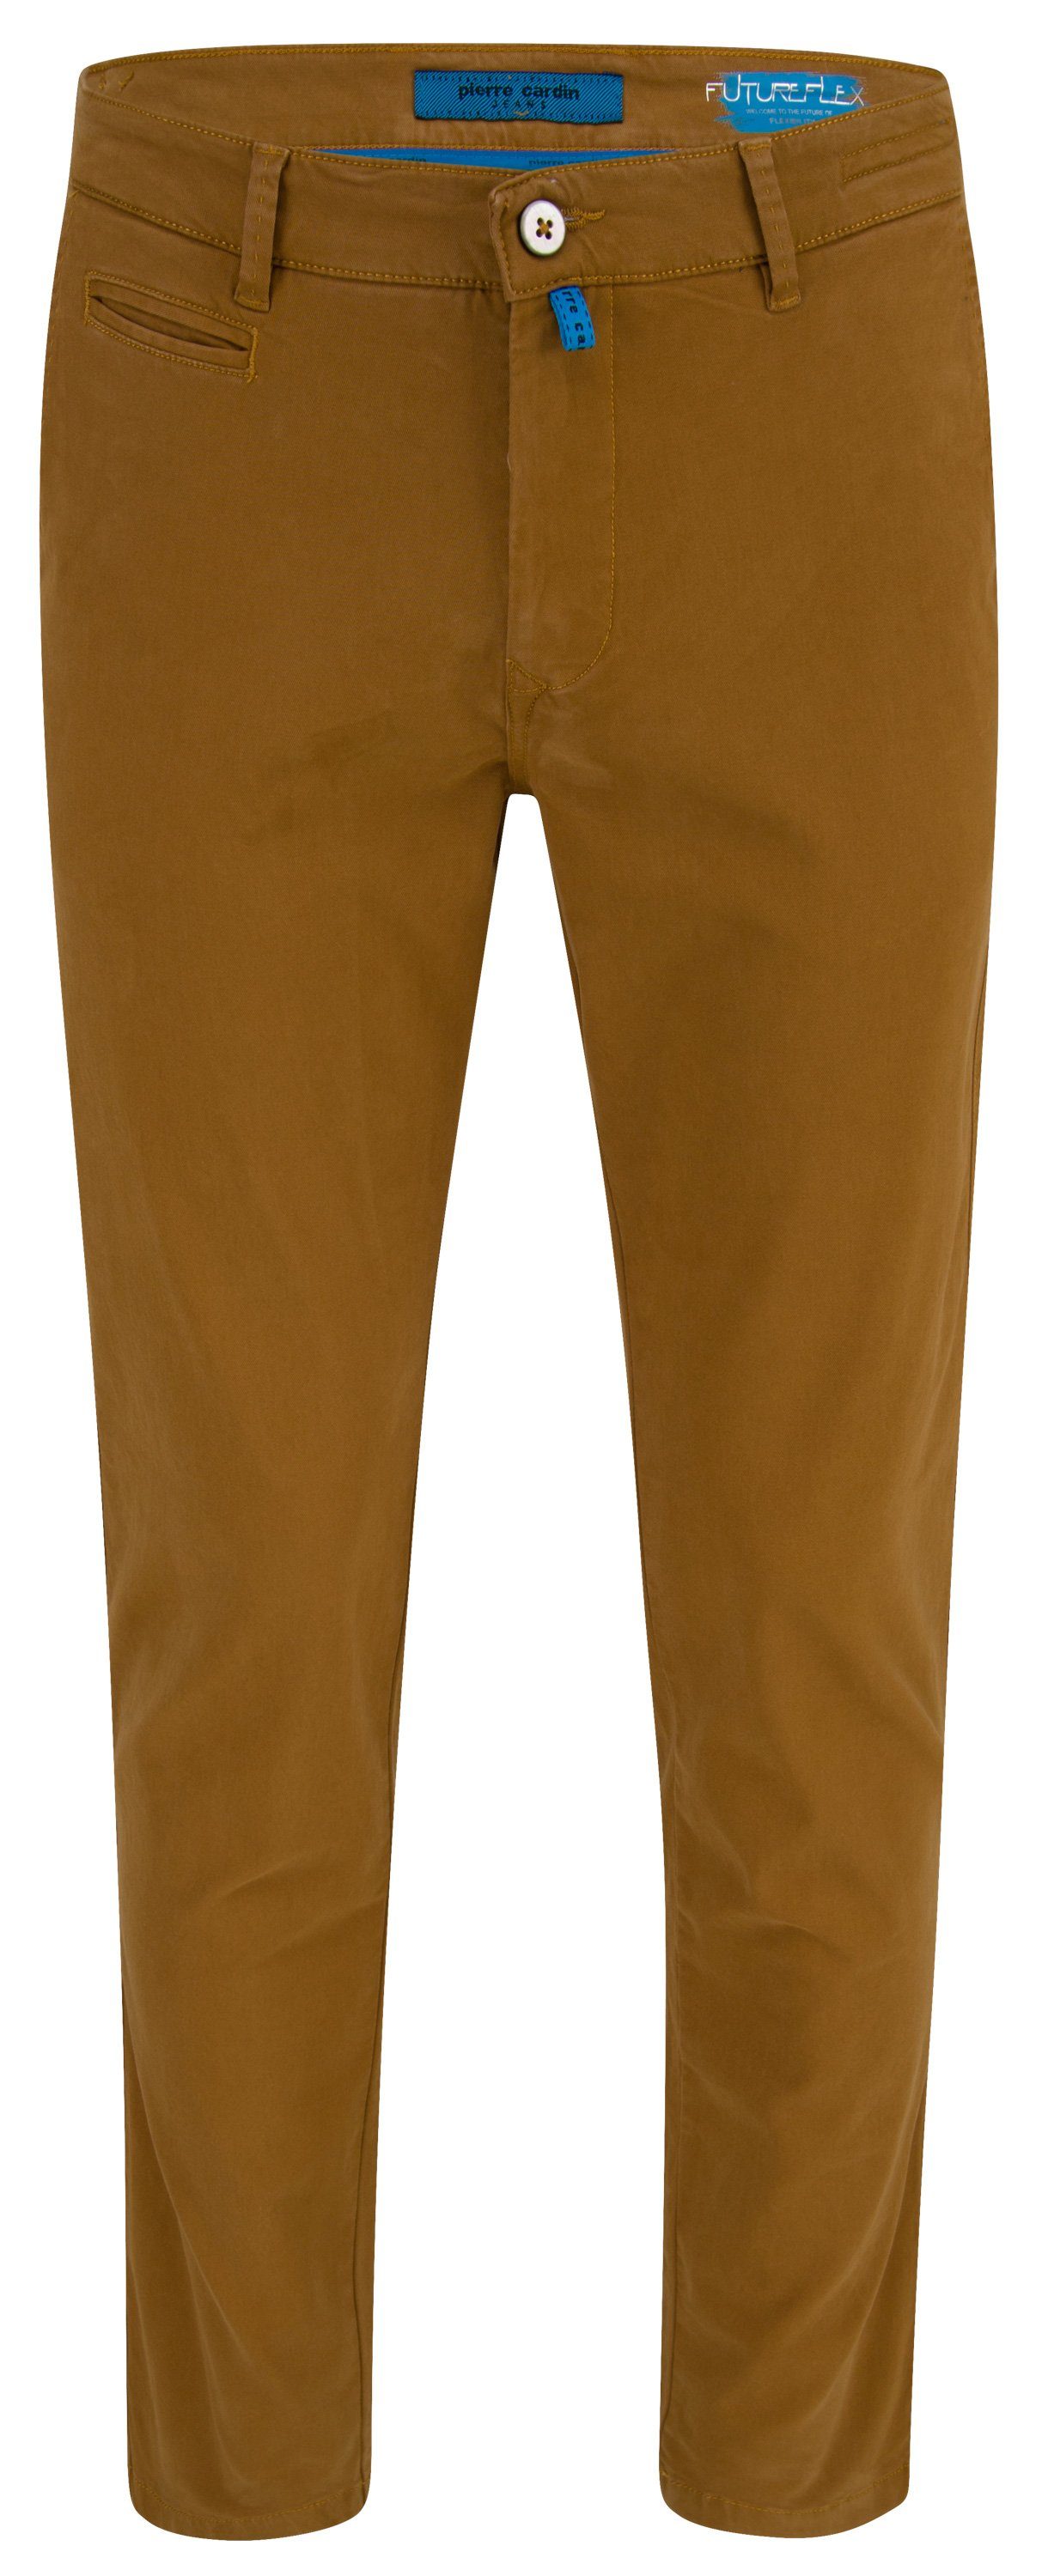 Cardin Pierre LYON FUTUREFLEX ocher CARDIN 33757 2233.45 5-Pocket-Jeans brown PIERRE